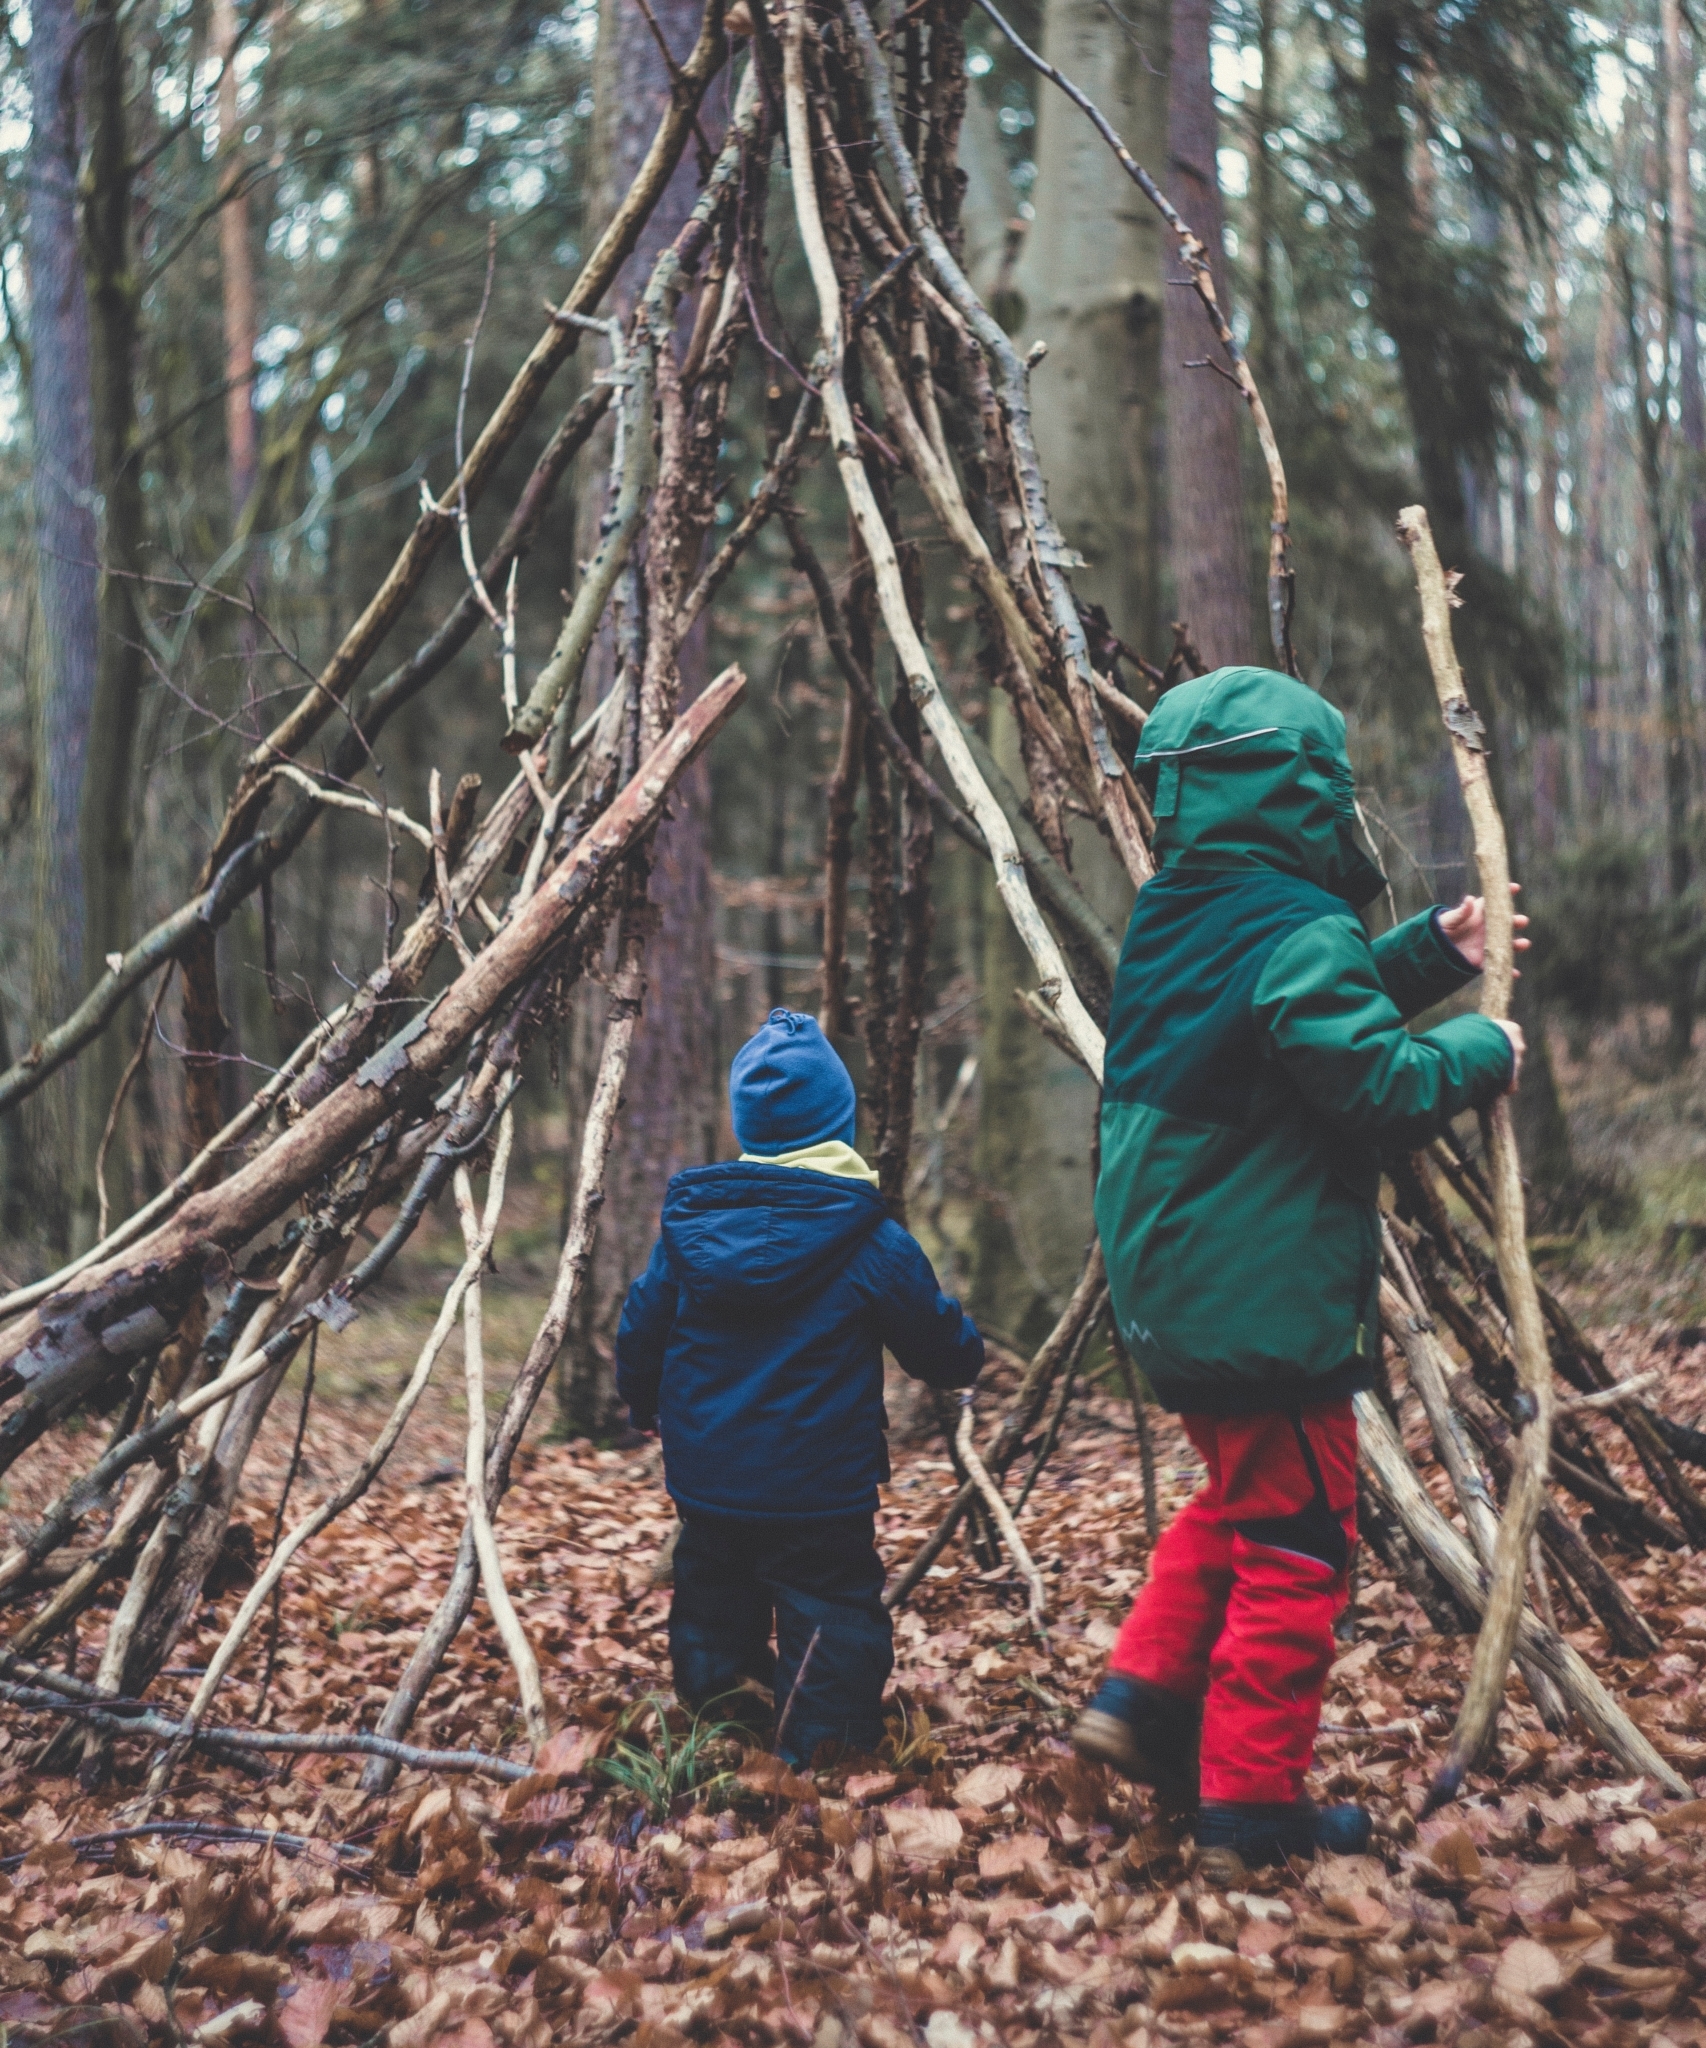 Zwei Kinder spielen im Wald und bauen ein Tipi mit großen Stöcken